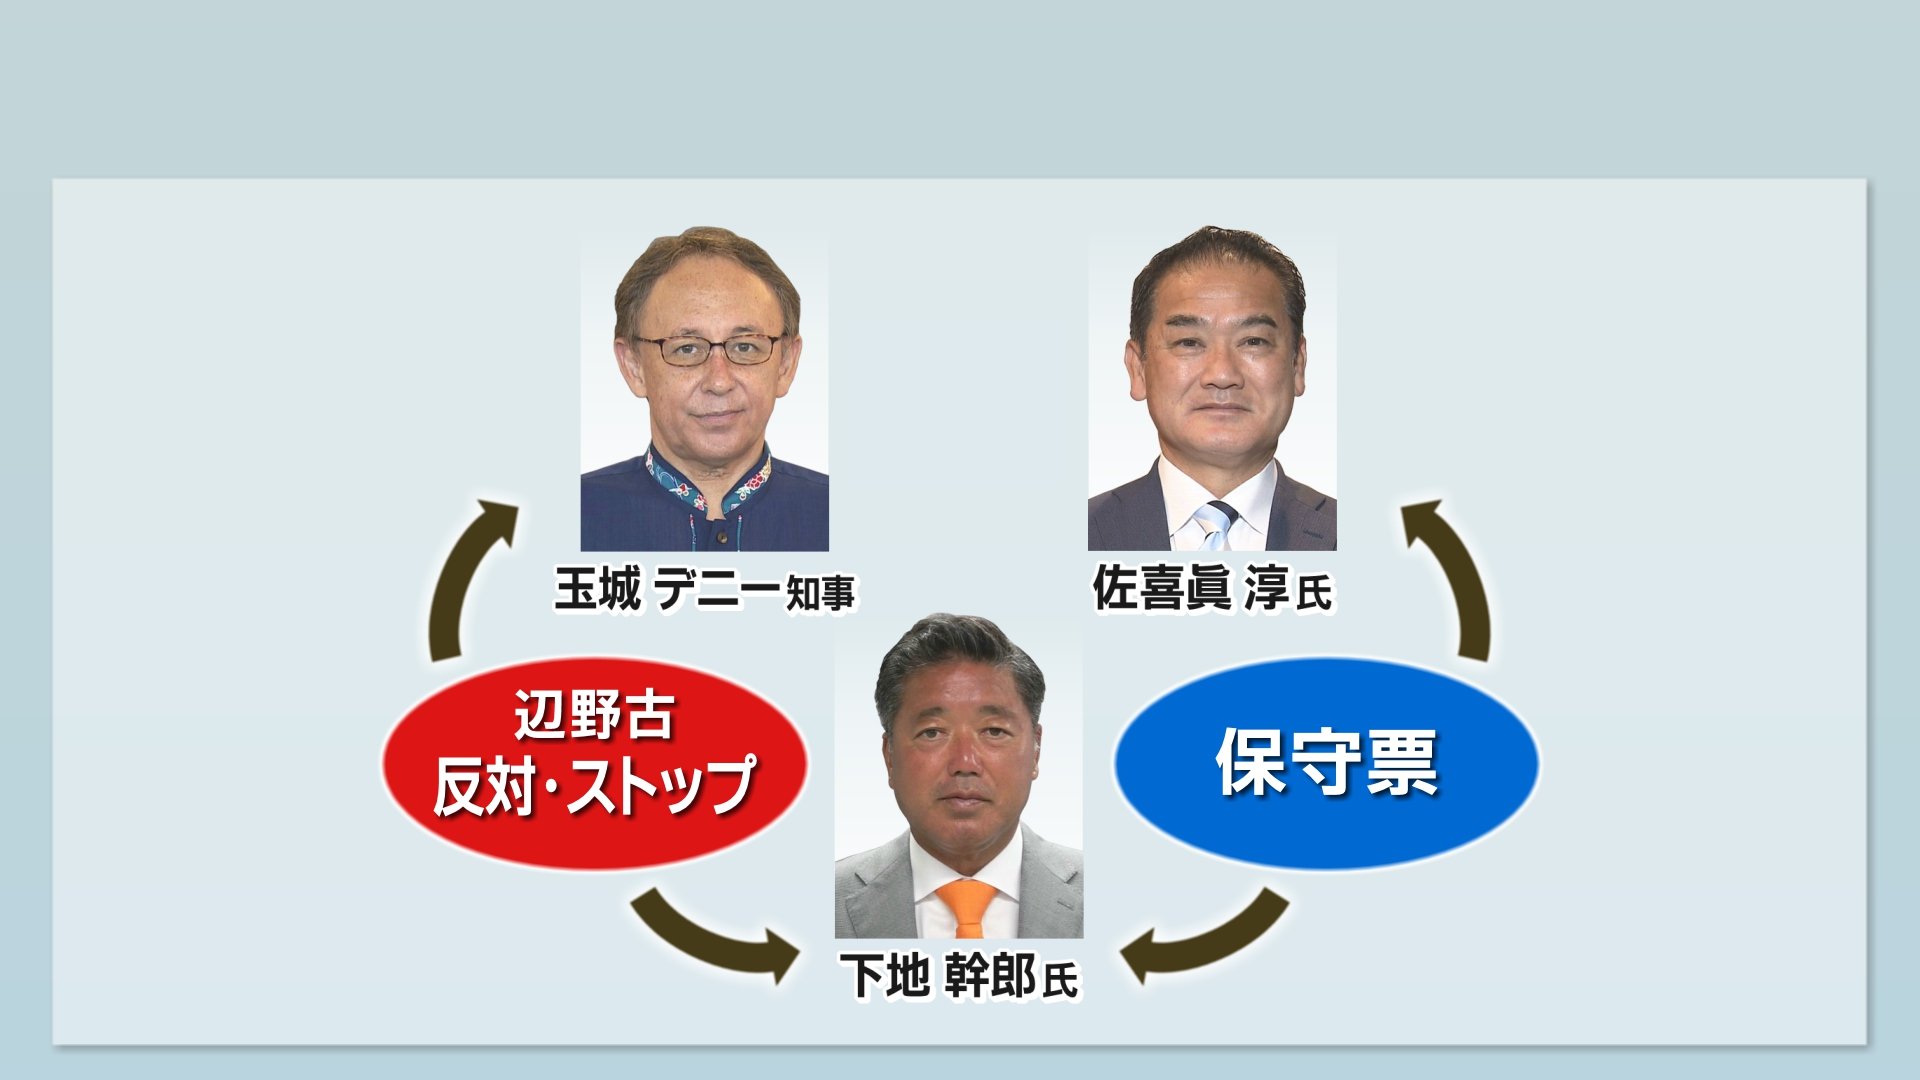 沖縄県知事選挙まで1か月  その構図と主な争点、それぞれの主張　9月11日投票